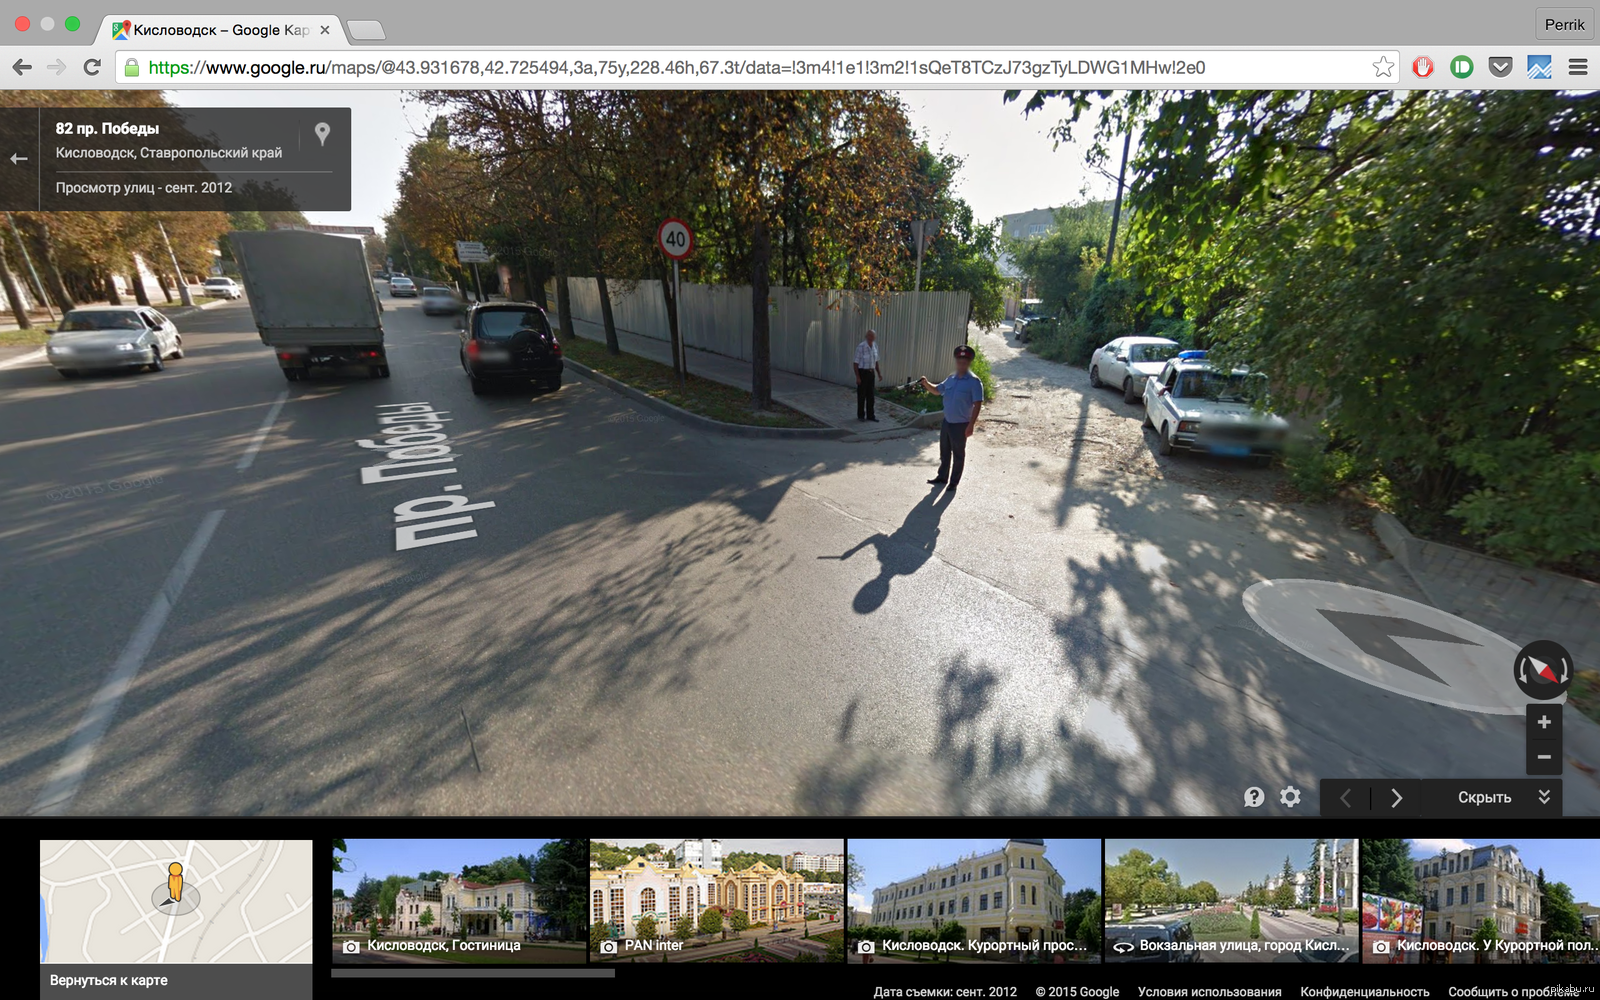 Гугл карты. Google Maps панорама. Гугл карты панорама улиц. Панорамные карты гугл. Гугл карты человечек ходить по улице